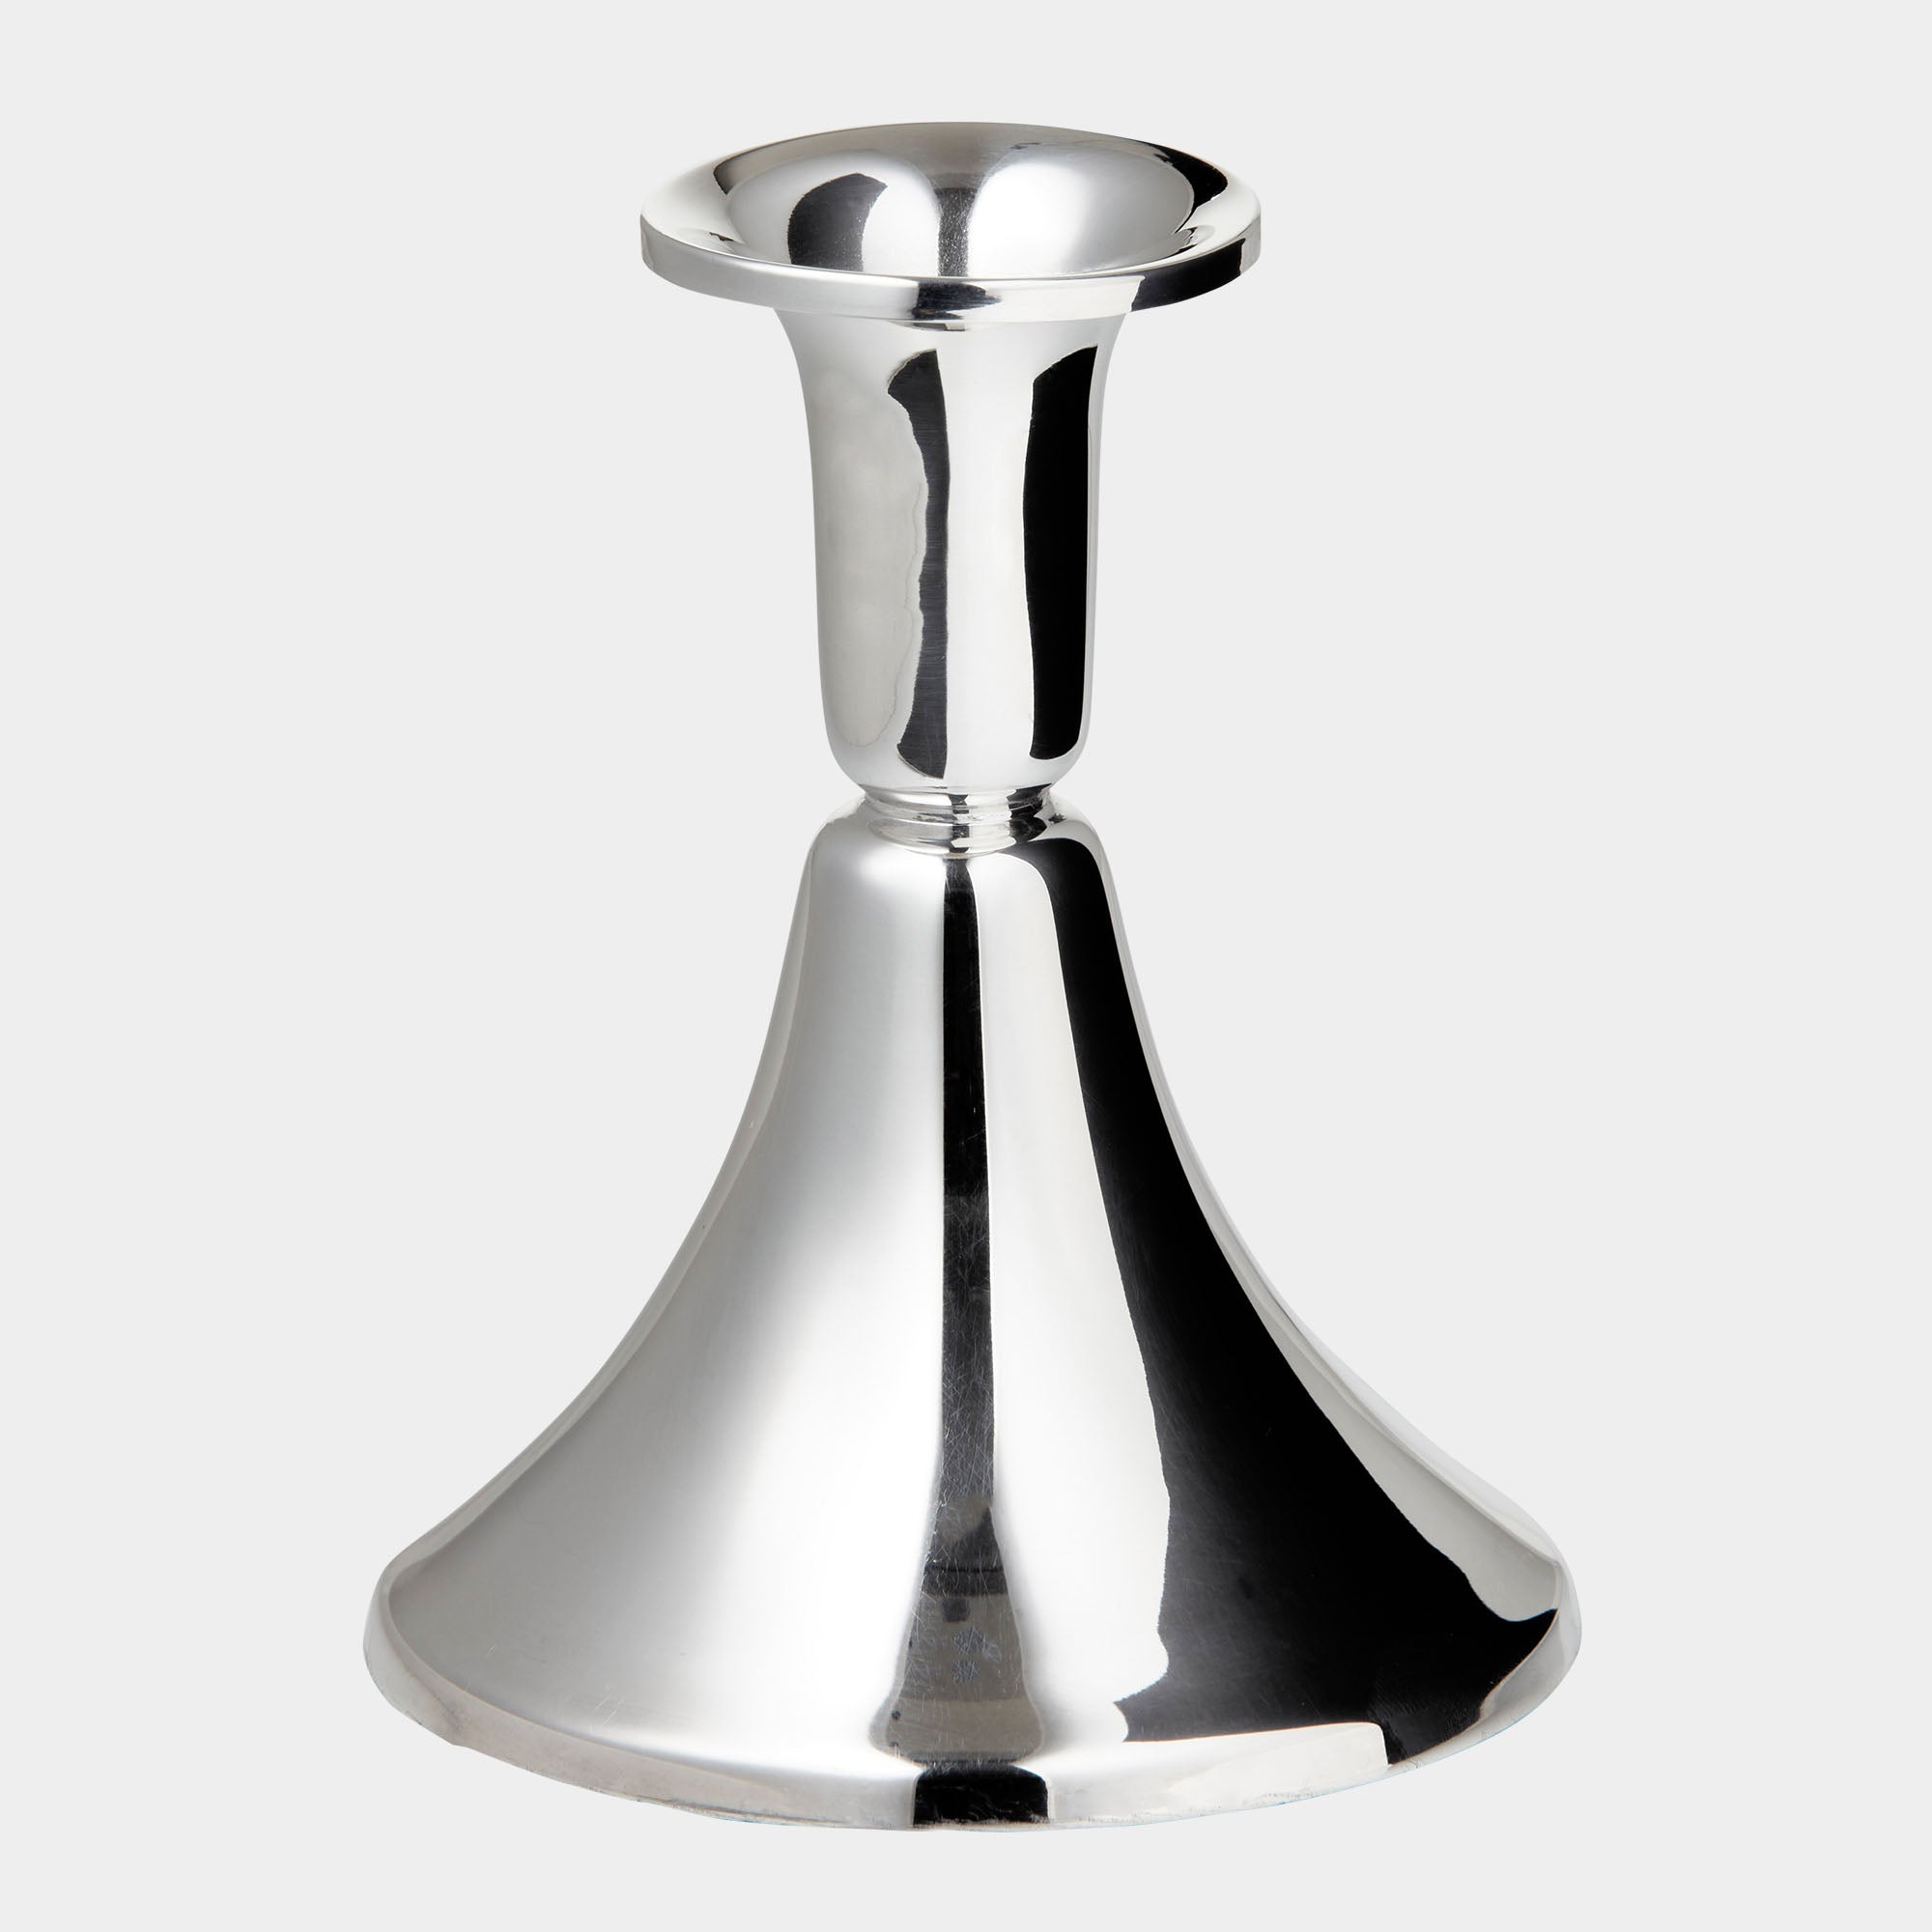 Italienischer Design-Leuchter aus 925er Silber mit Filzschutz - 10cm Höhe - Bild 1